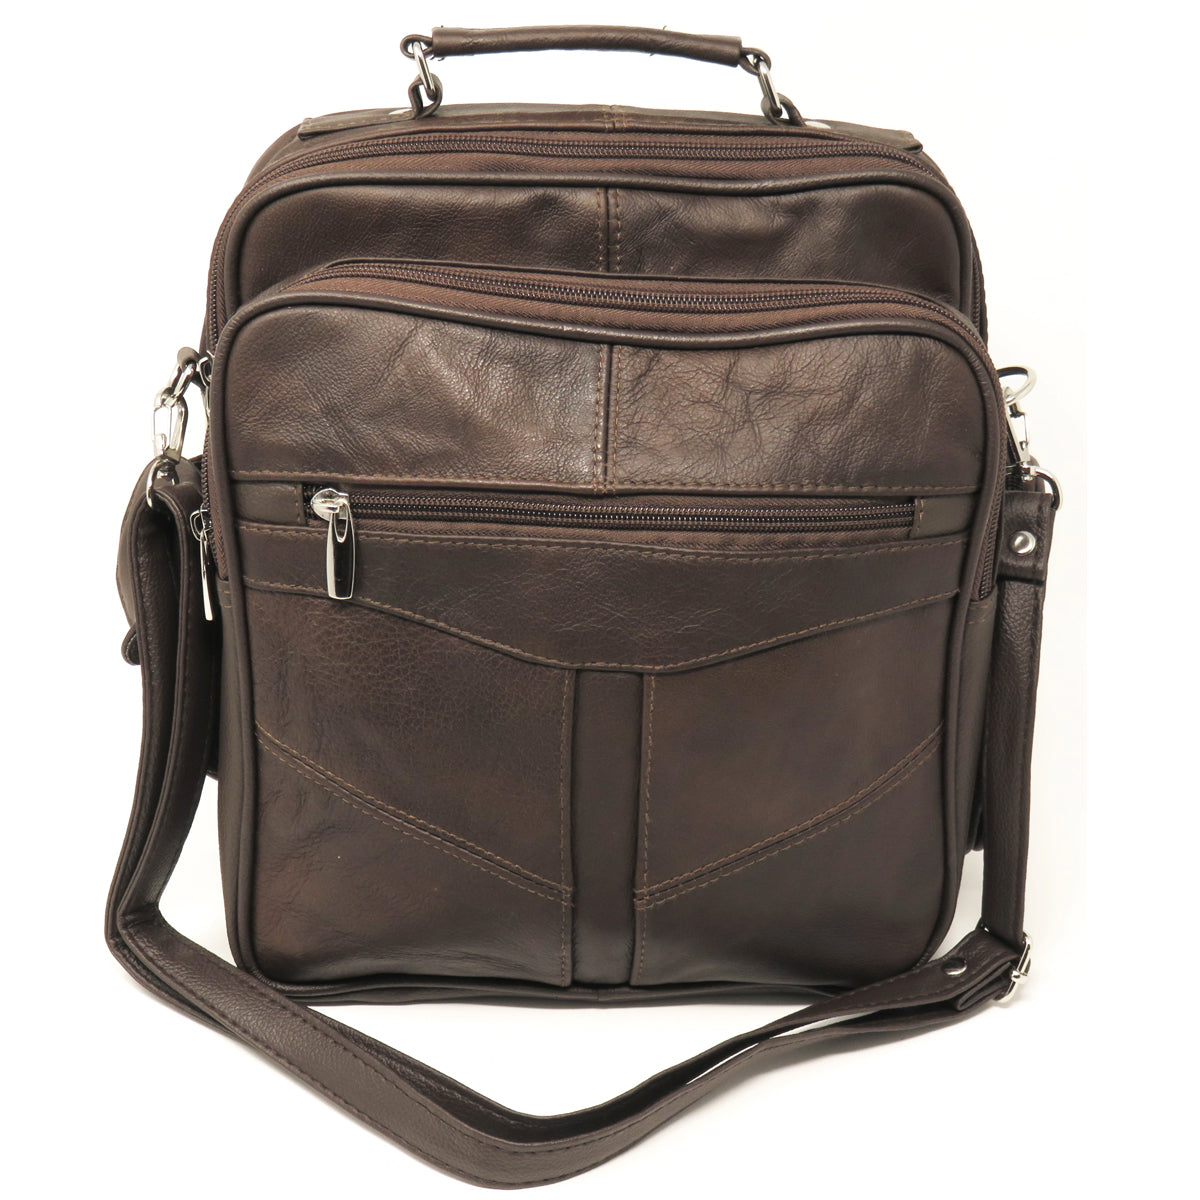 Pure Leather Shoulder Bag